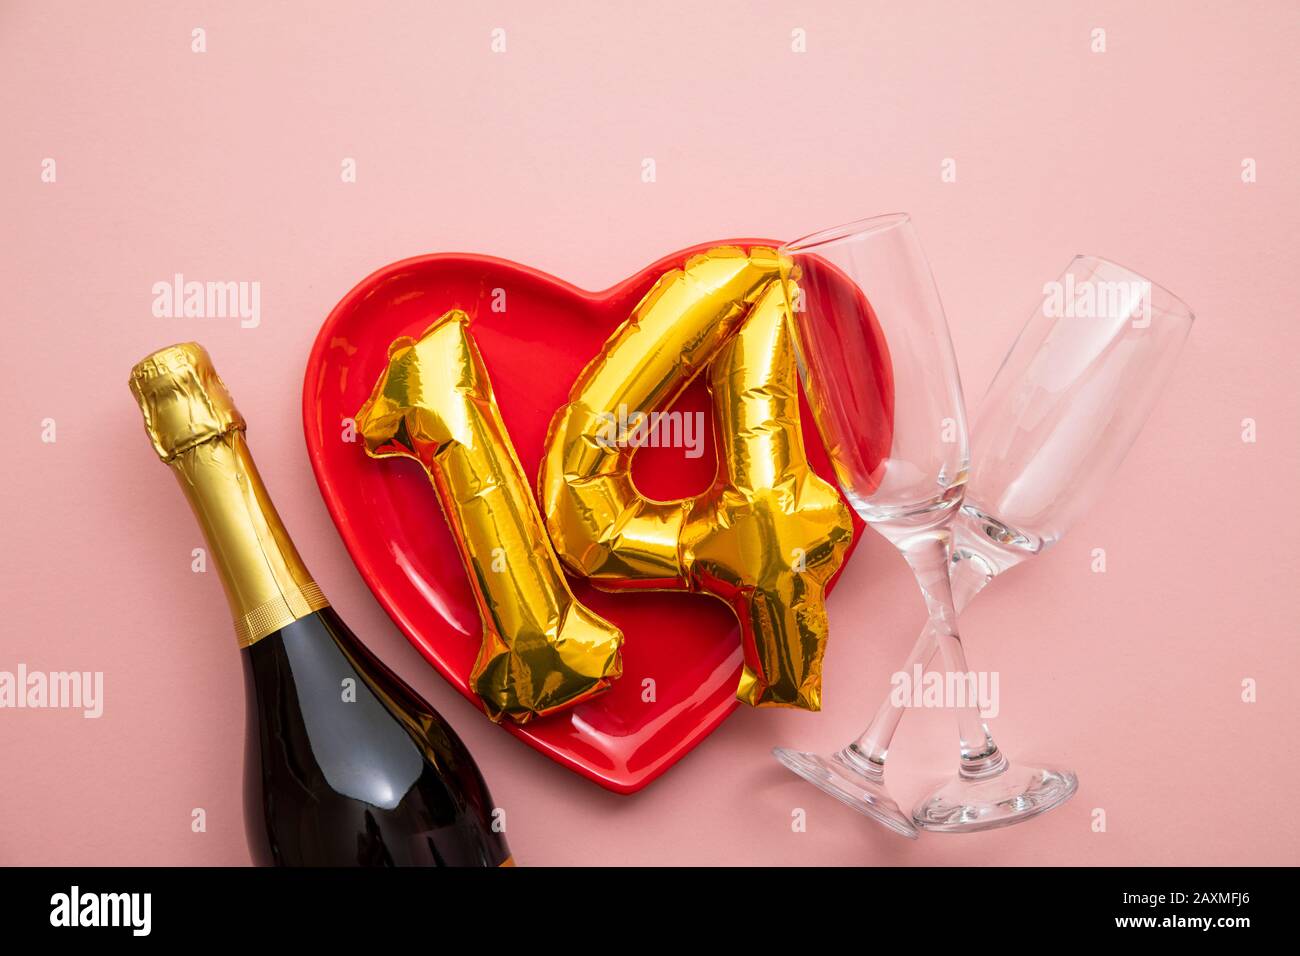 14 février fond romantique de la Saint Valentin Banque D'Images